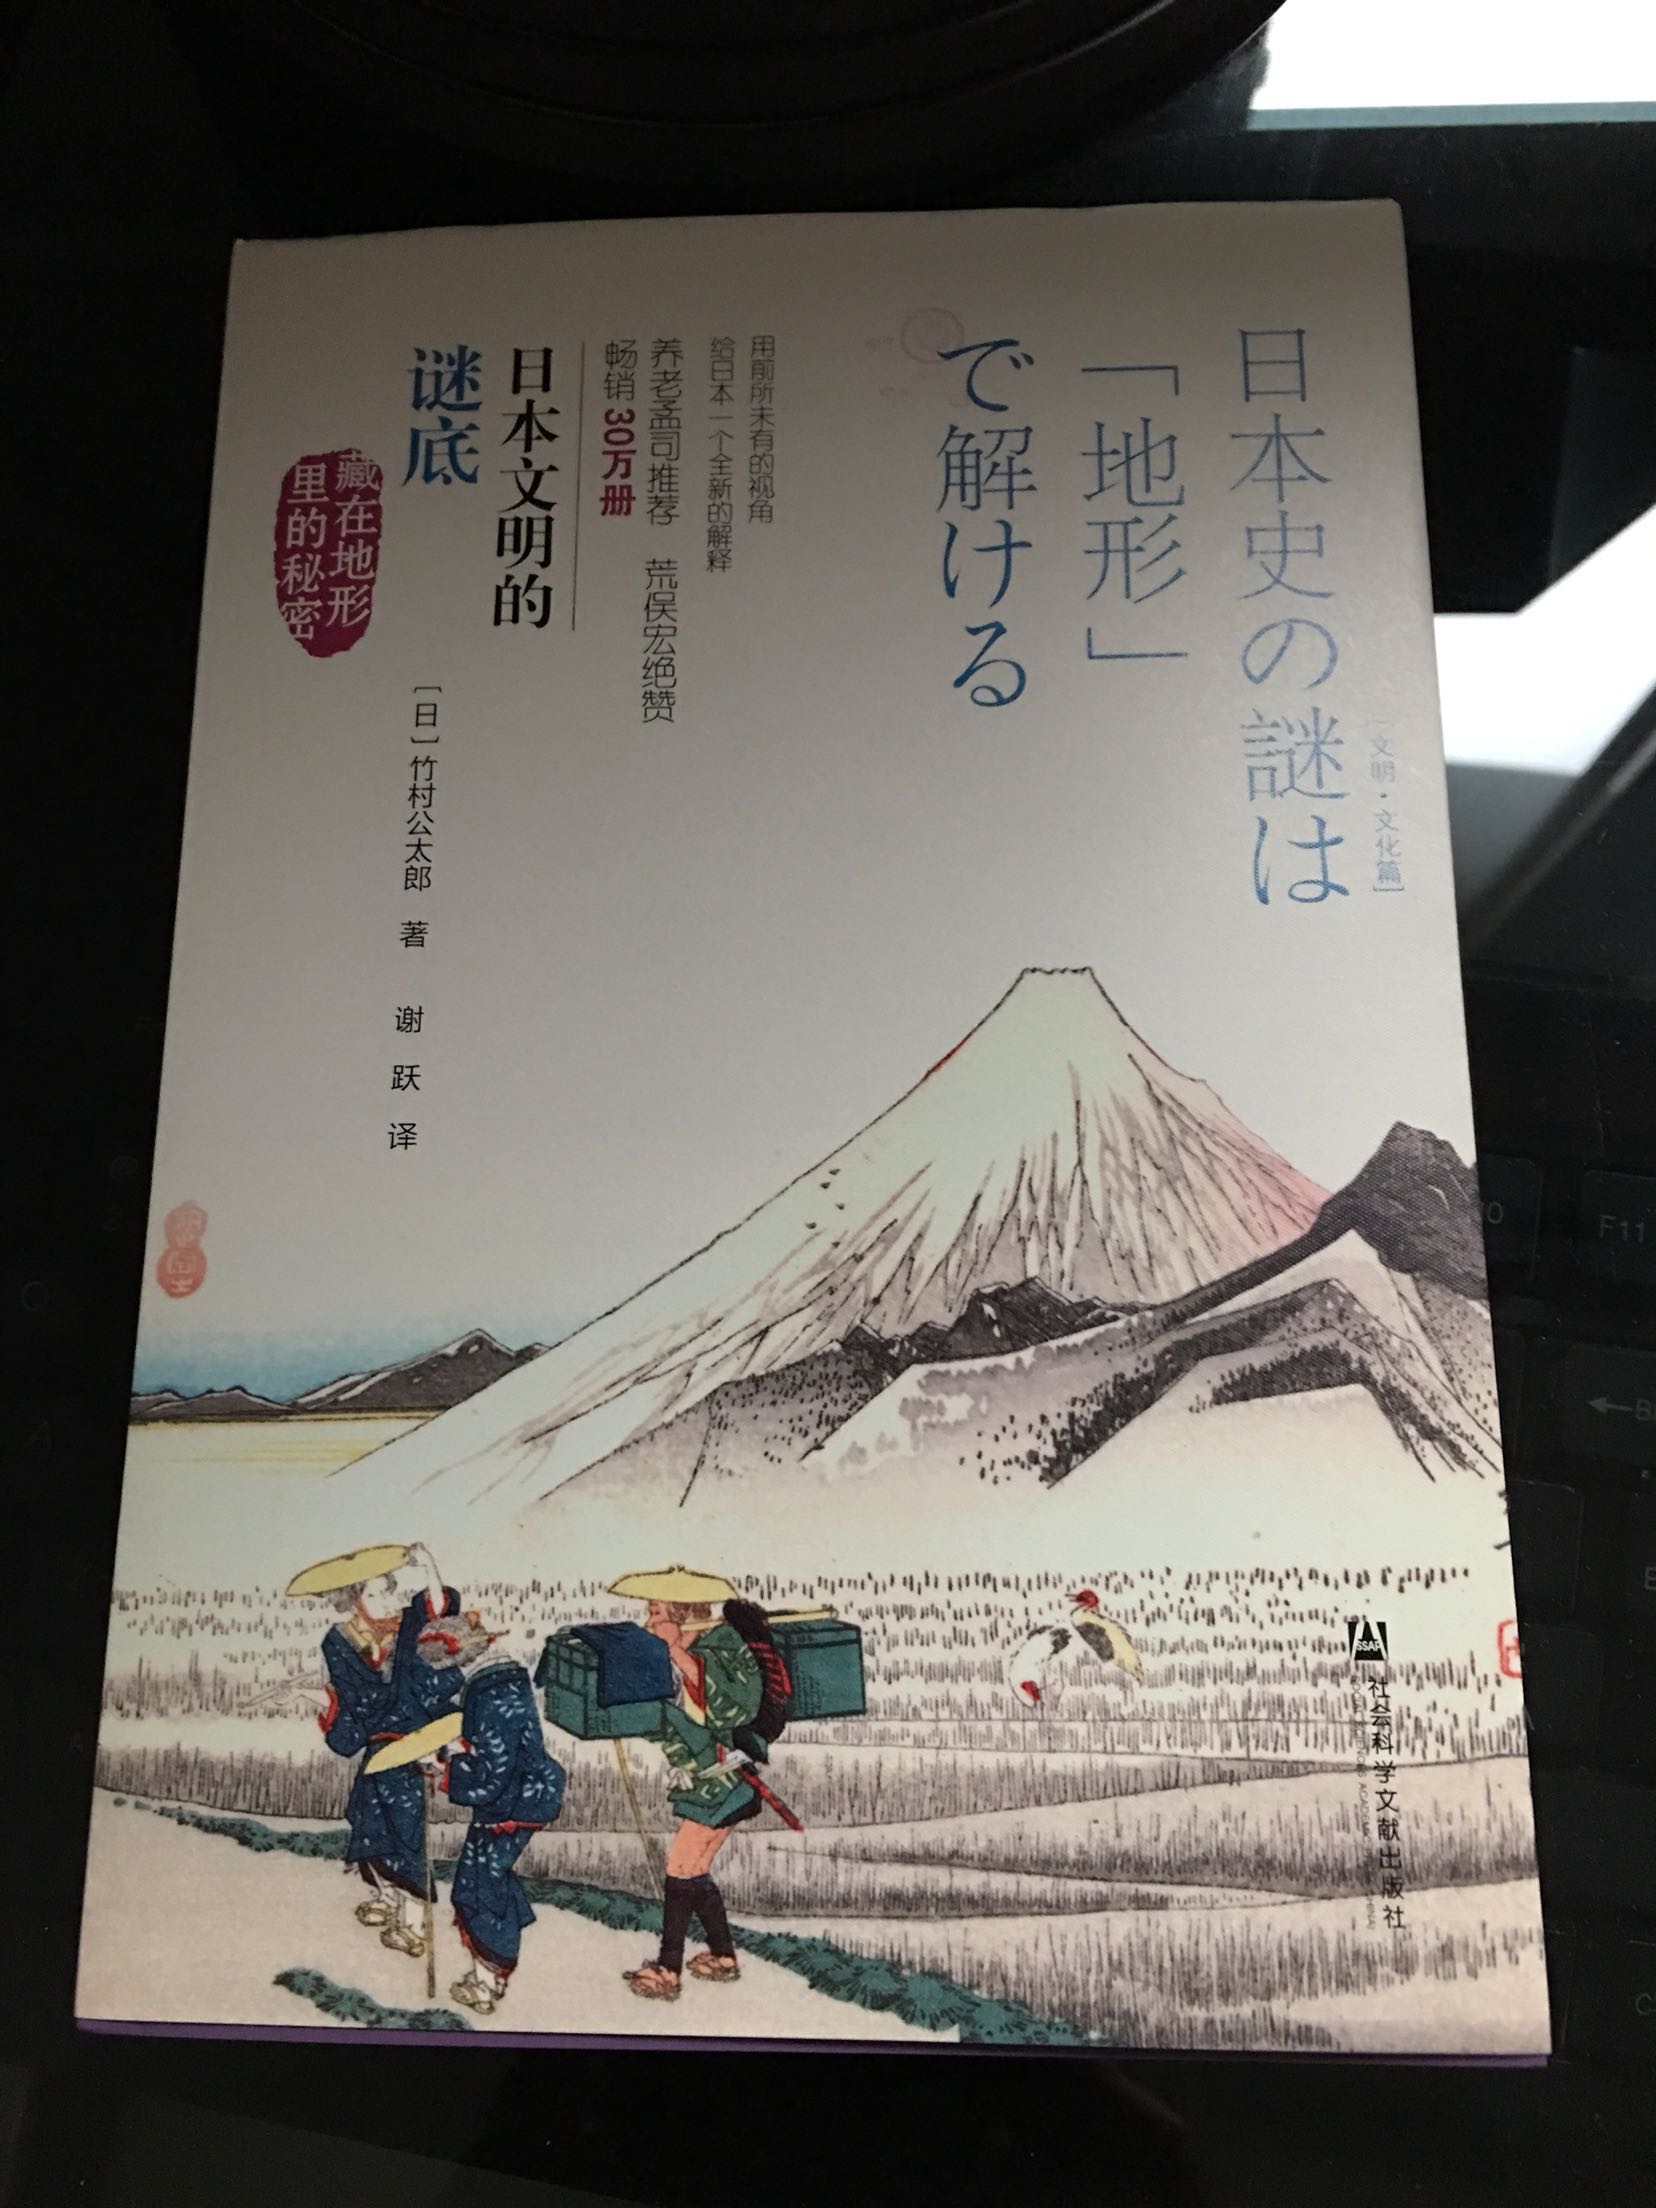 很好 学日语系 顺便研究一下日本的历史 不错